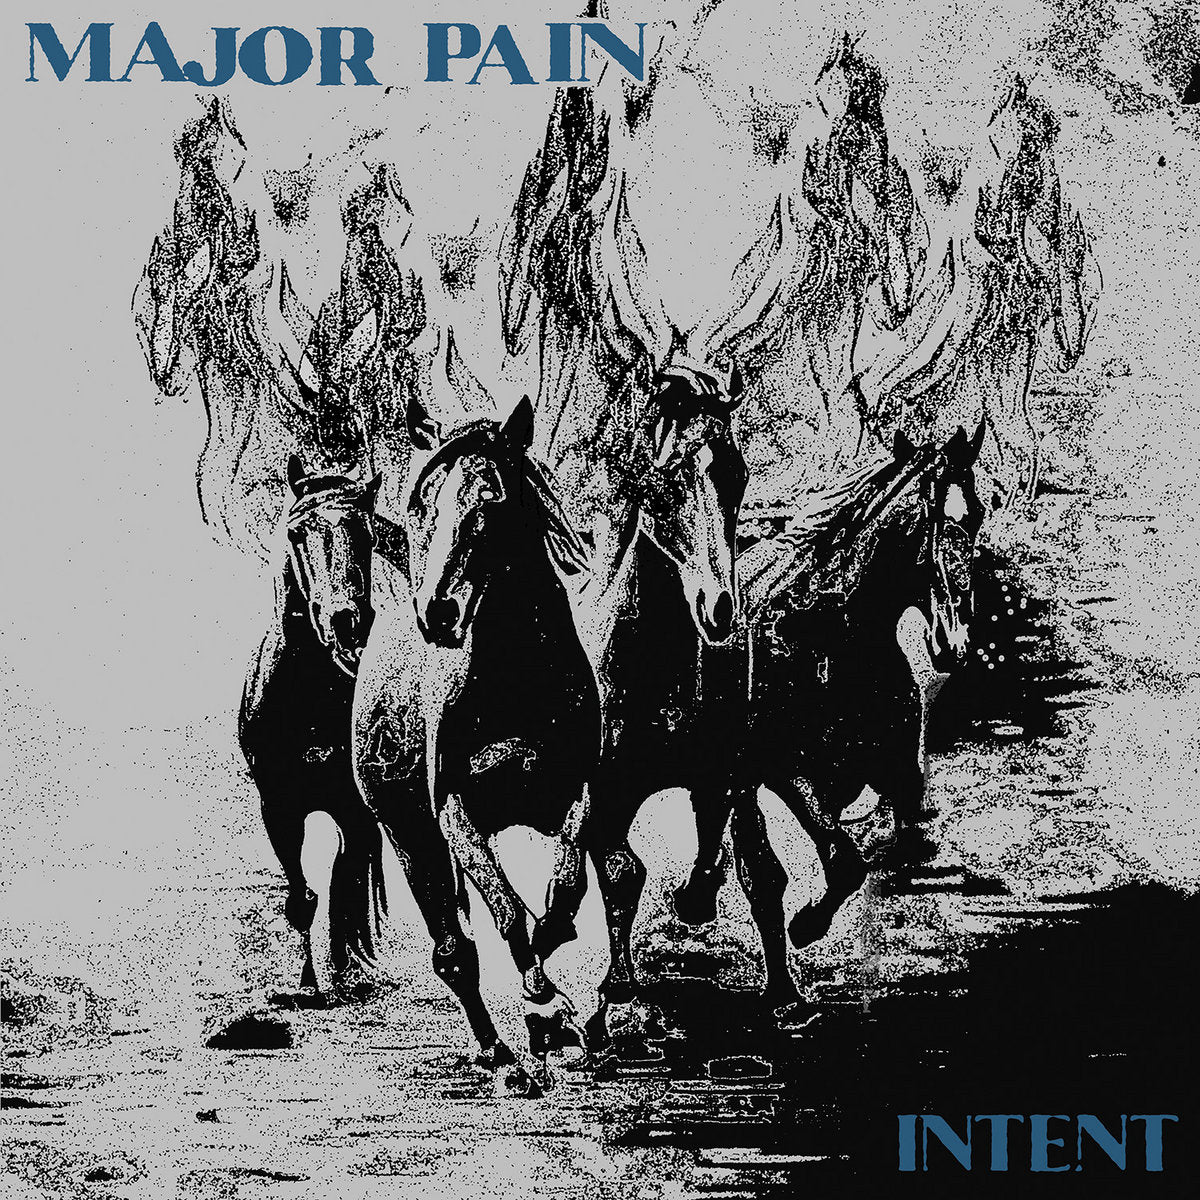 MAJOR PAIN - INTENT Vinyl LP